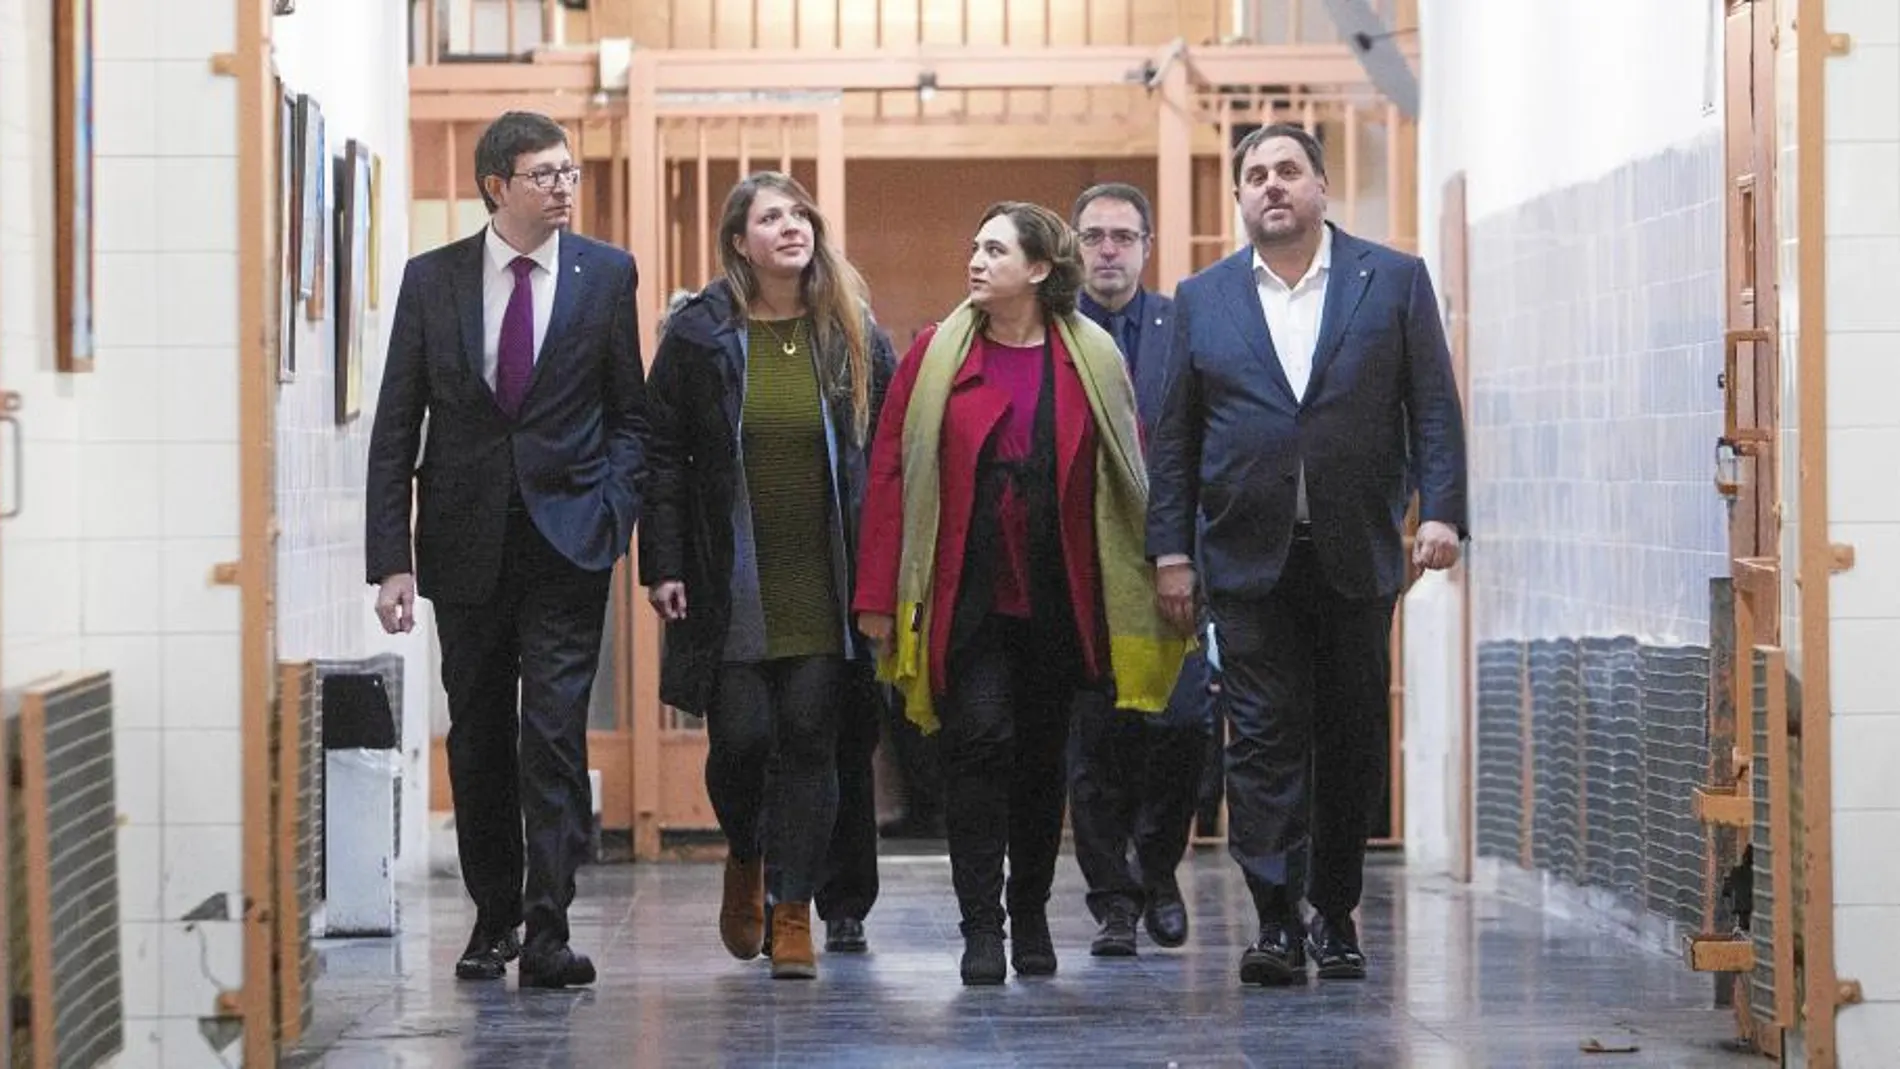 (De i a d) El conseller de Justicia de la Generalitat, Carles Mundó; la teniente de alcalde de Urbanismo, Janet Sanz; la alcaldesa de Barcelona, Ada Colau; y el vicepresidente de la Generalitat, Oriol Junqueras, entranen la prisión Modelo.